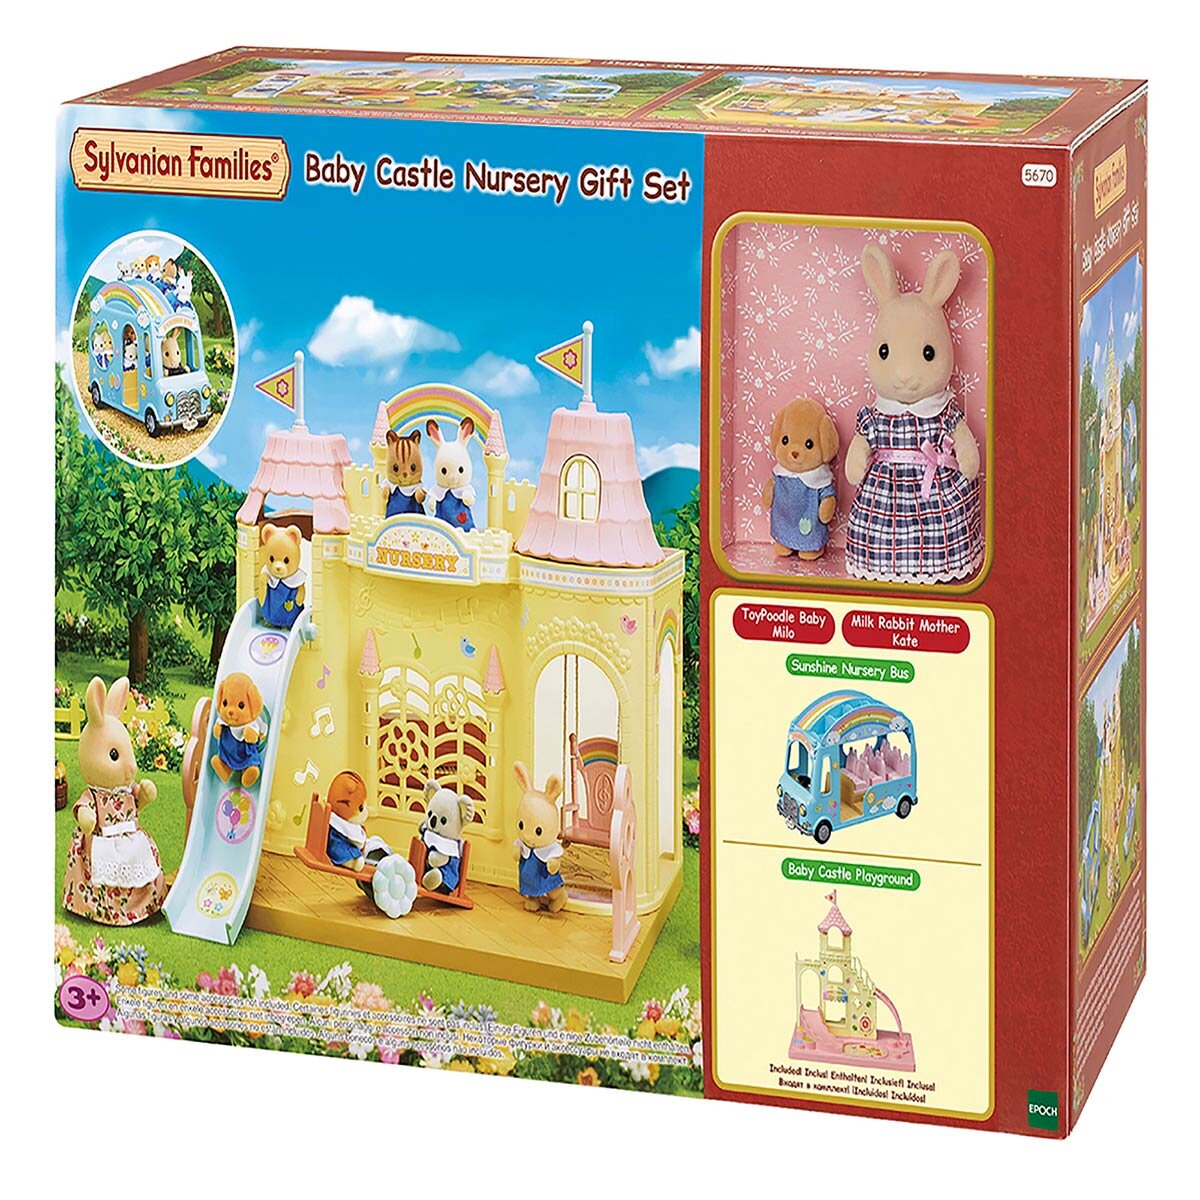 Buy Sylvanian Baby Castle Nursery Box Image at Costco.co.uk